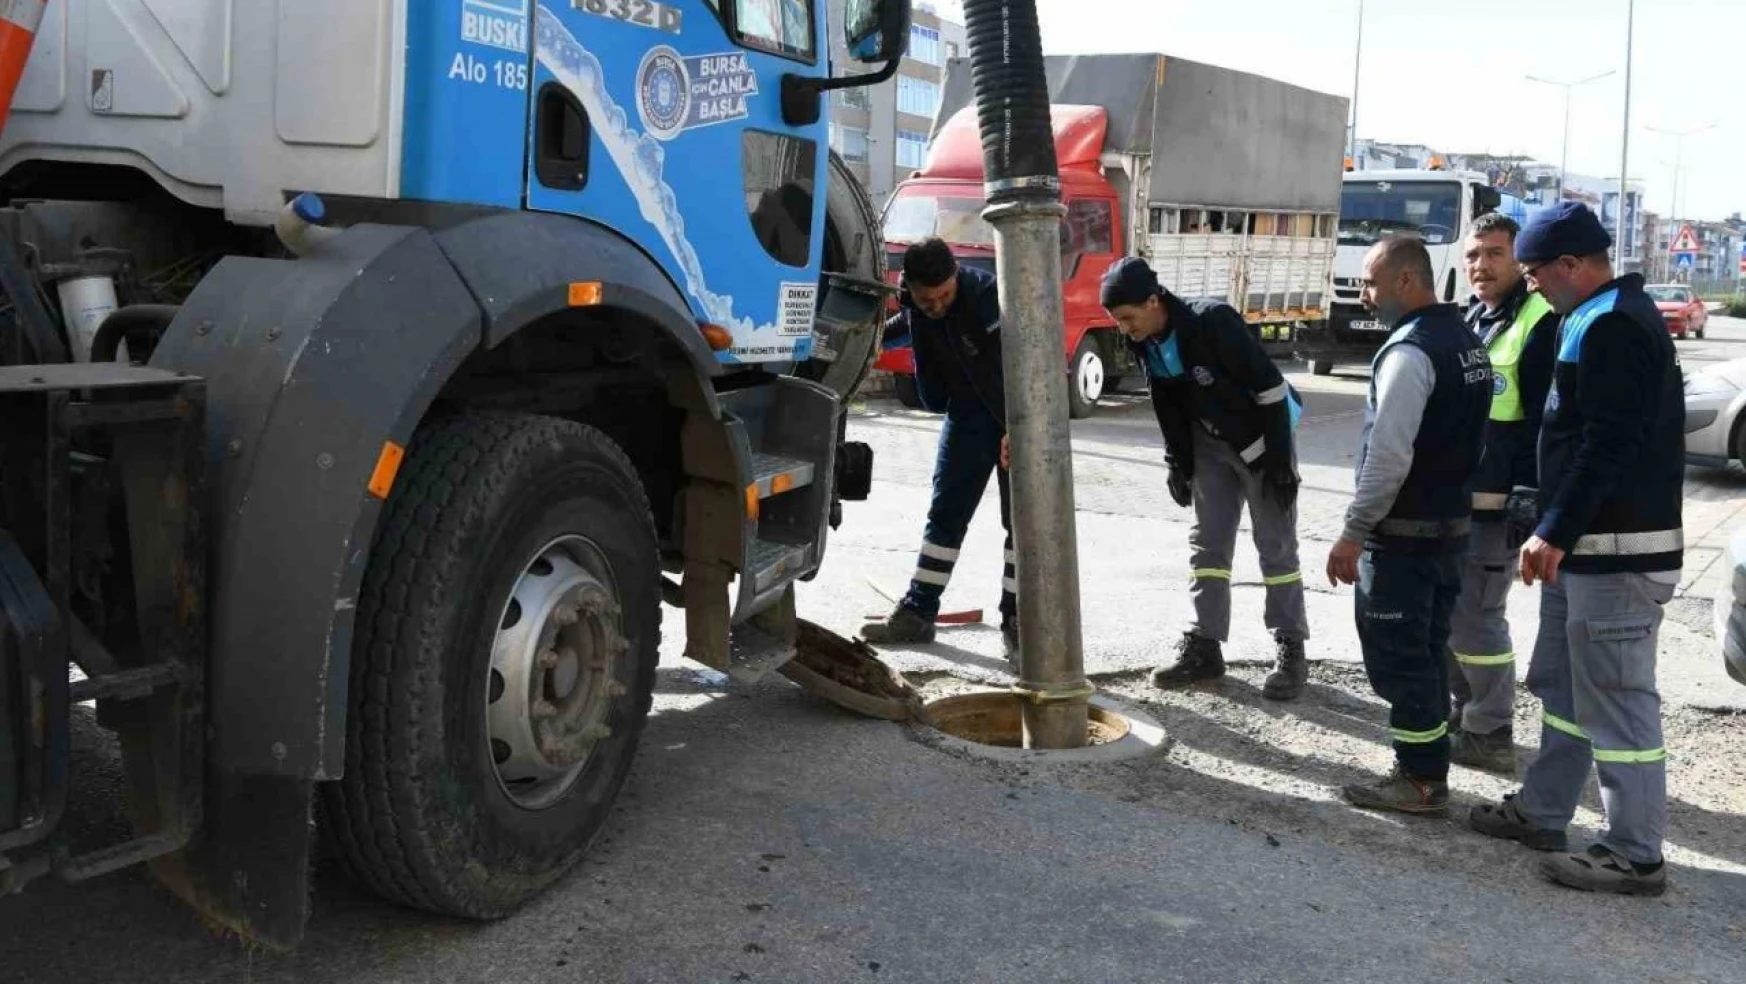 Lapseki'de kanalizasyon temizliği hız kesmeden devam ediyor